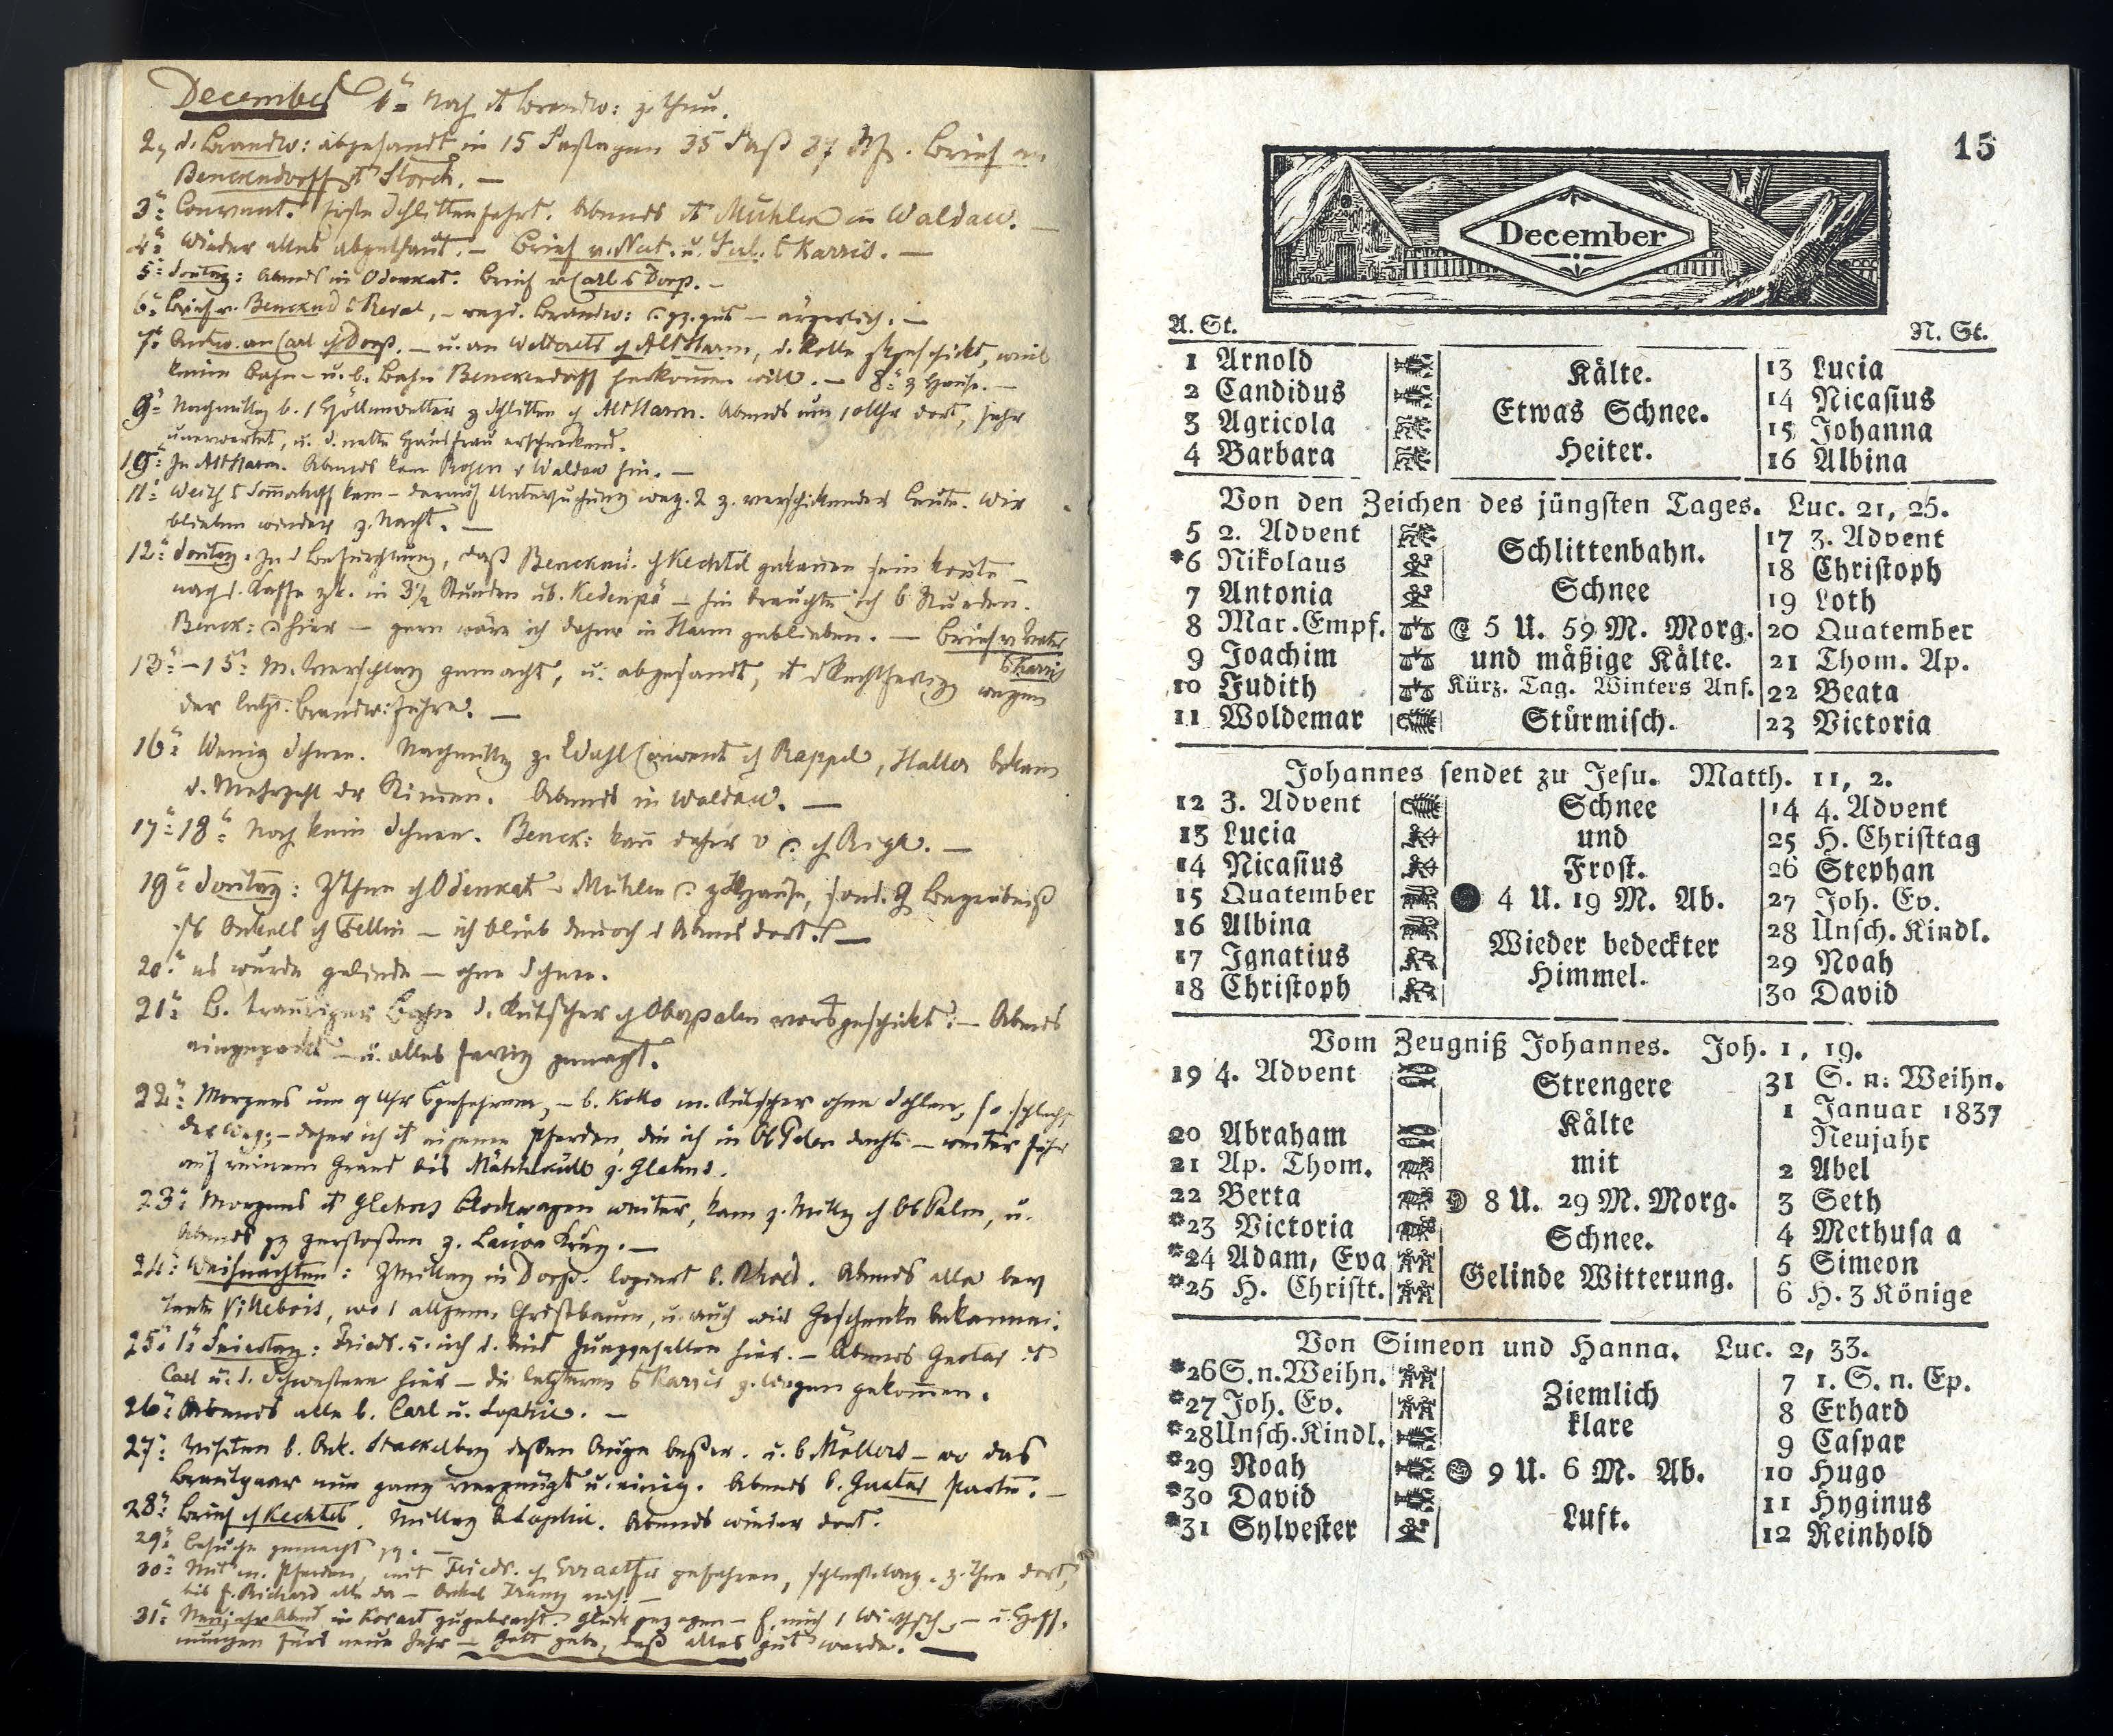 Dörptscher Kalender [1837] (1836) | 15. Main body of text